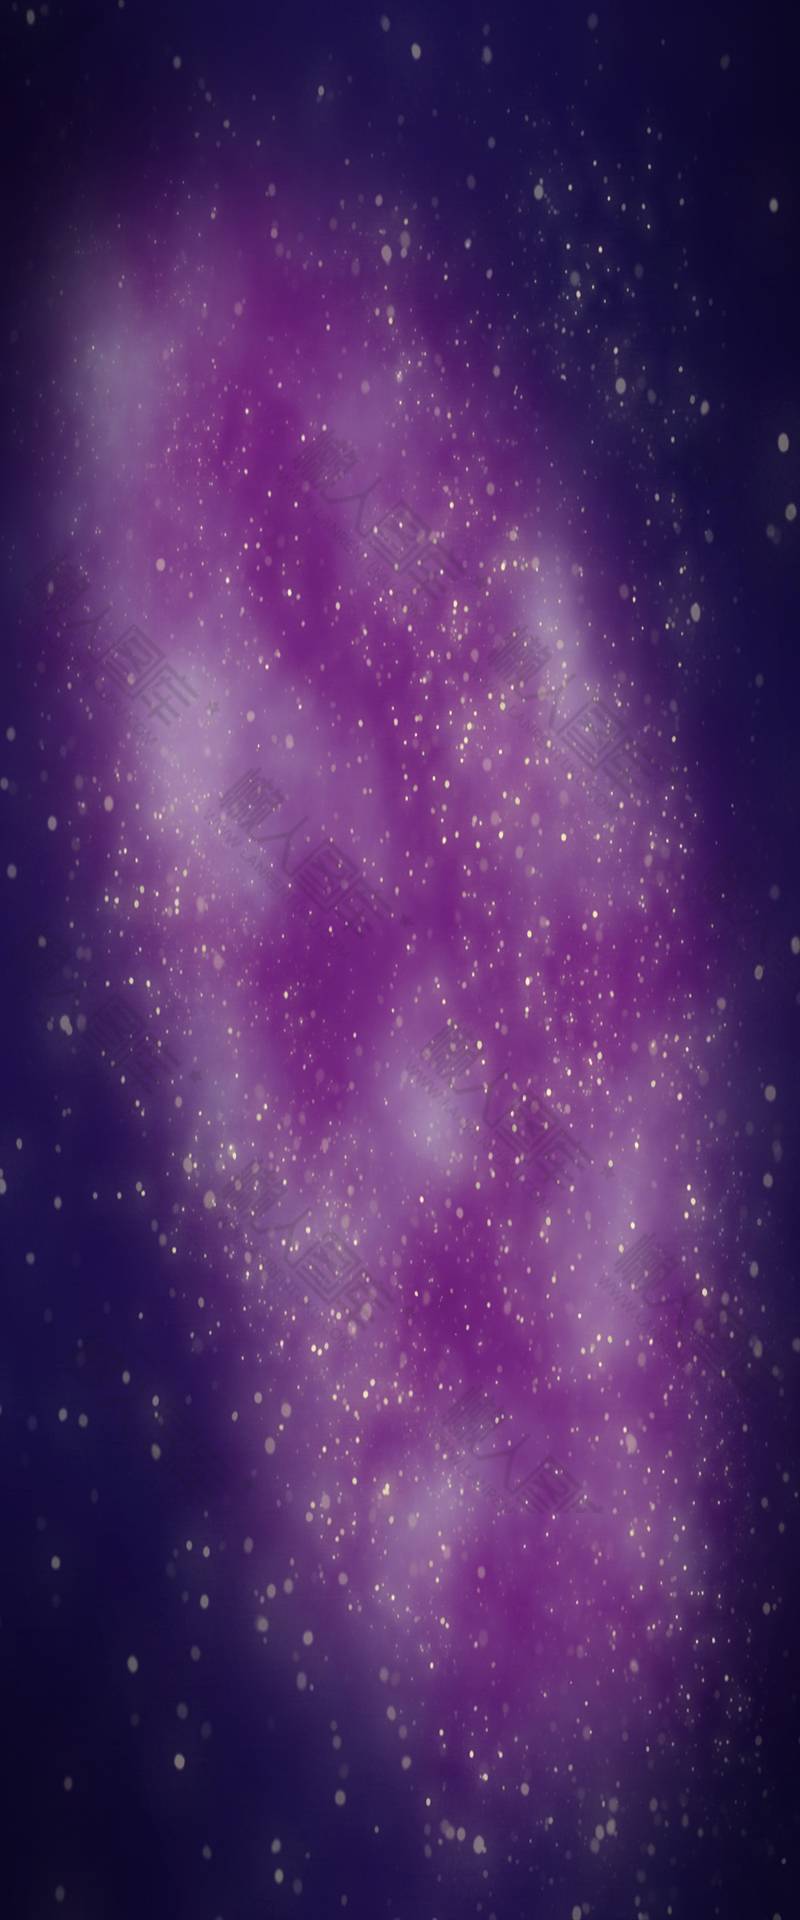 紫色星河背景图片 浪美唯美紫色星河背景设计素材高清下载 懒人图库